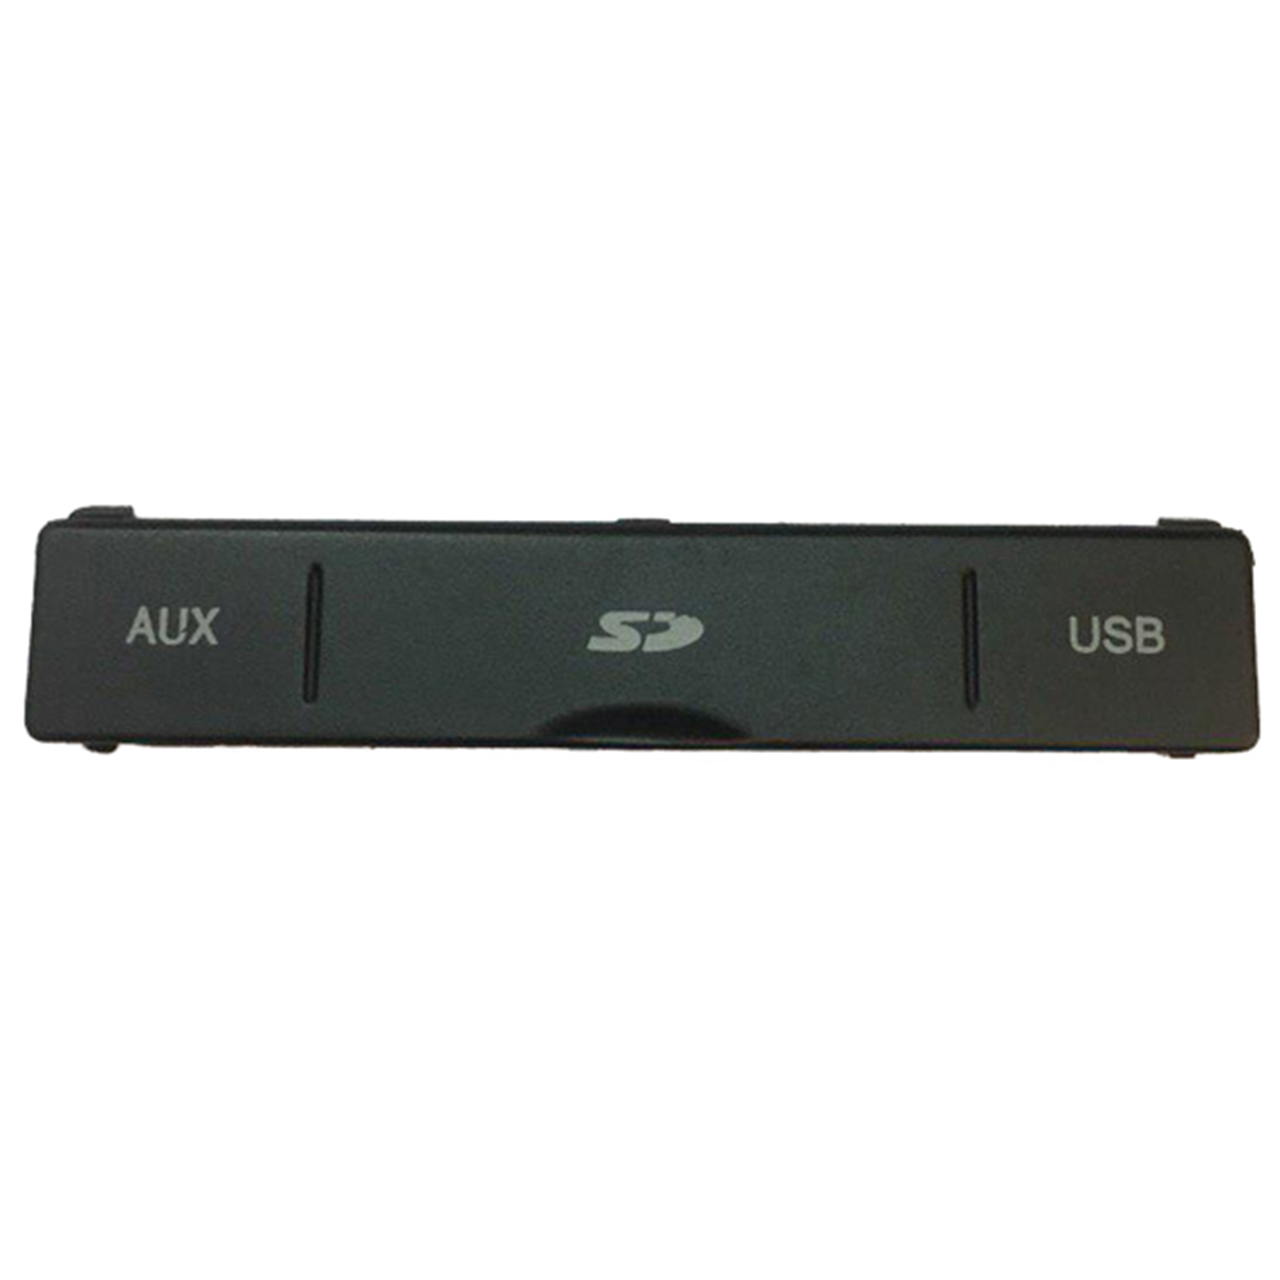 درب محفظه USB قطعه سازان کبیر US-PER-230 مناسب برای پژو پارس